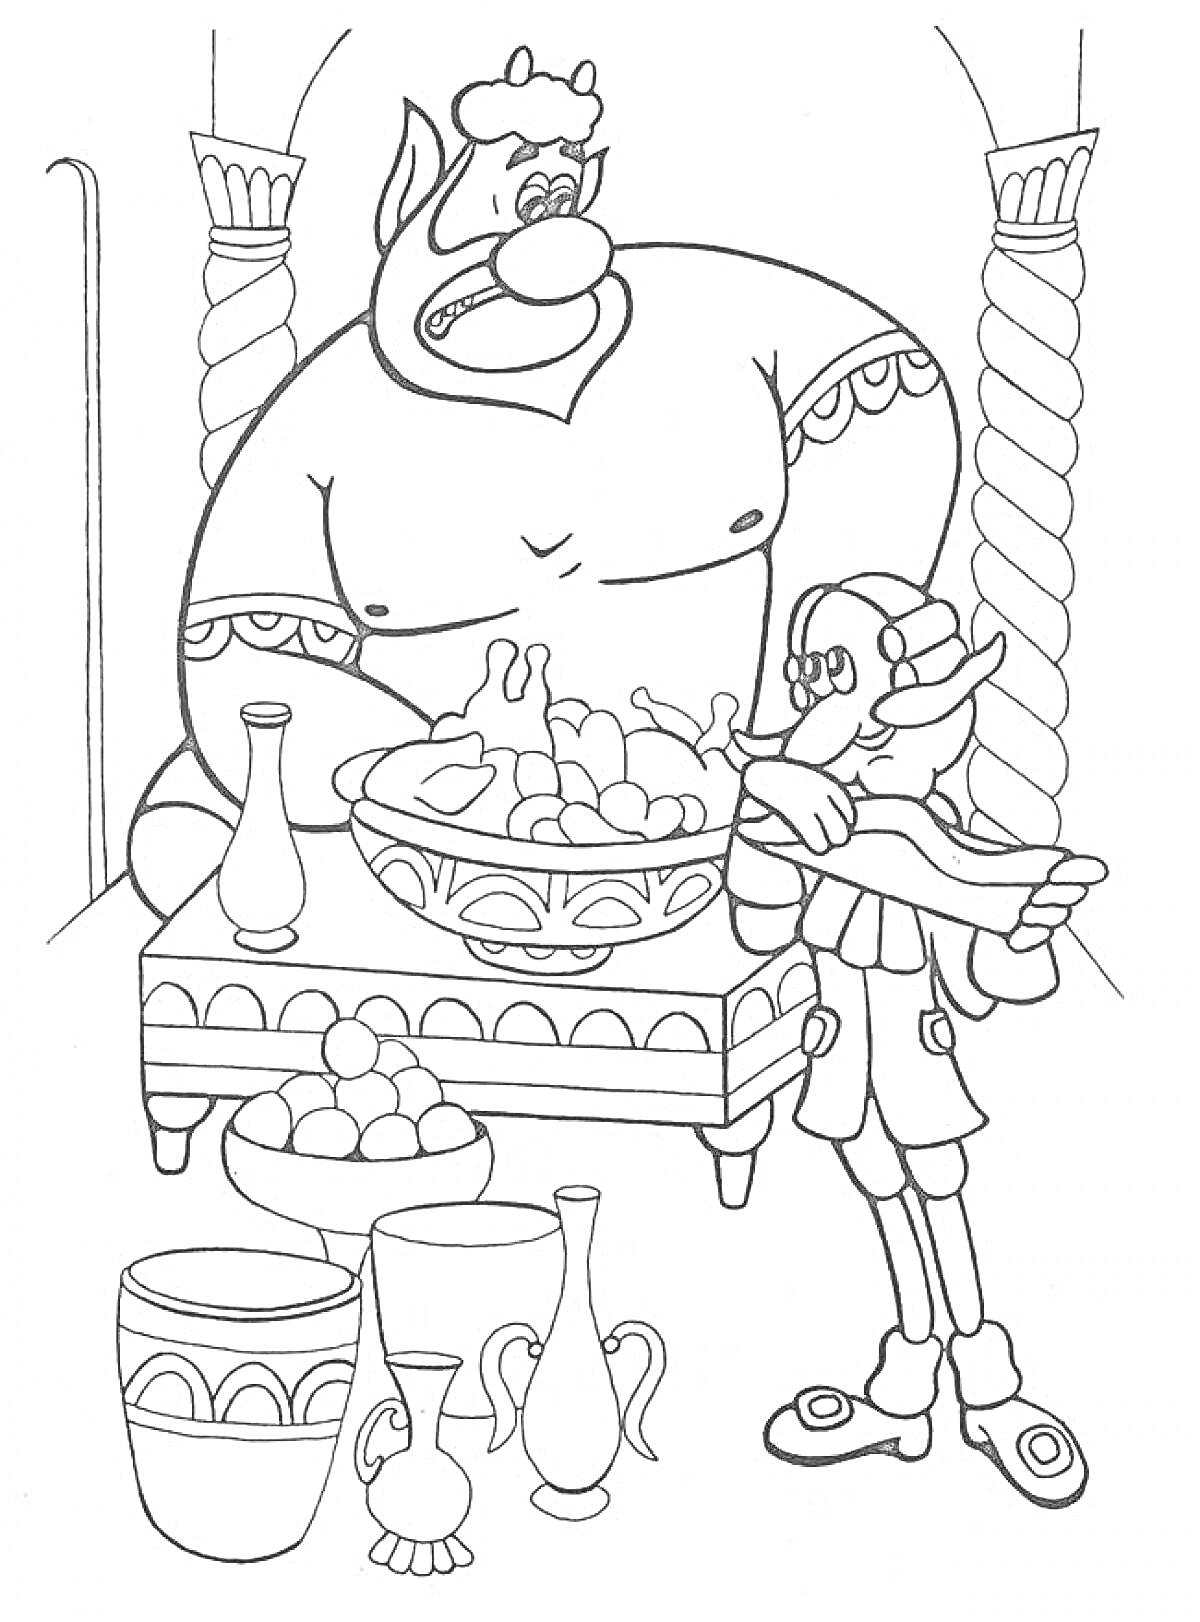 Раскраска Барон Мюнхгаузен и великан за столом с едой, кувшины и блюда с фруктами